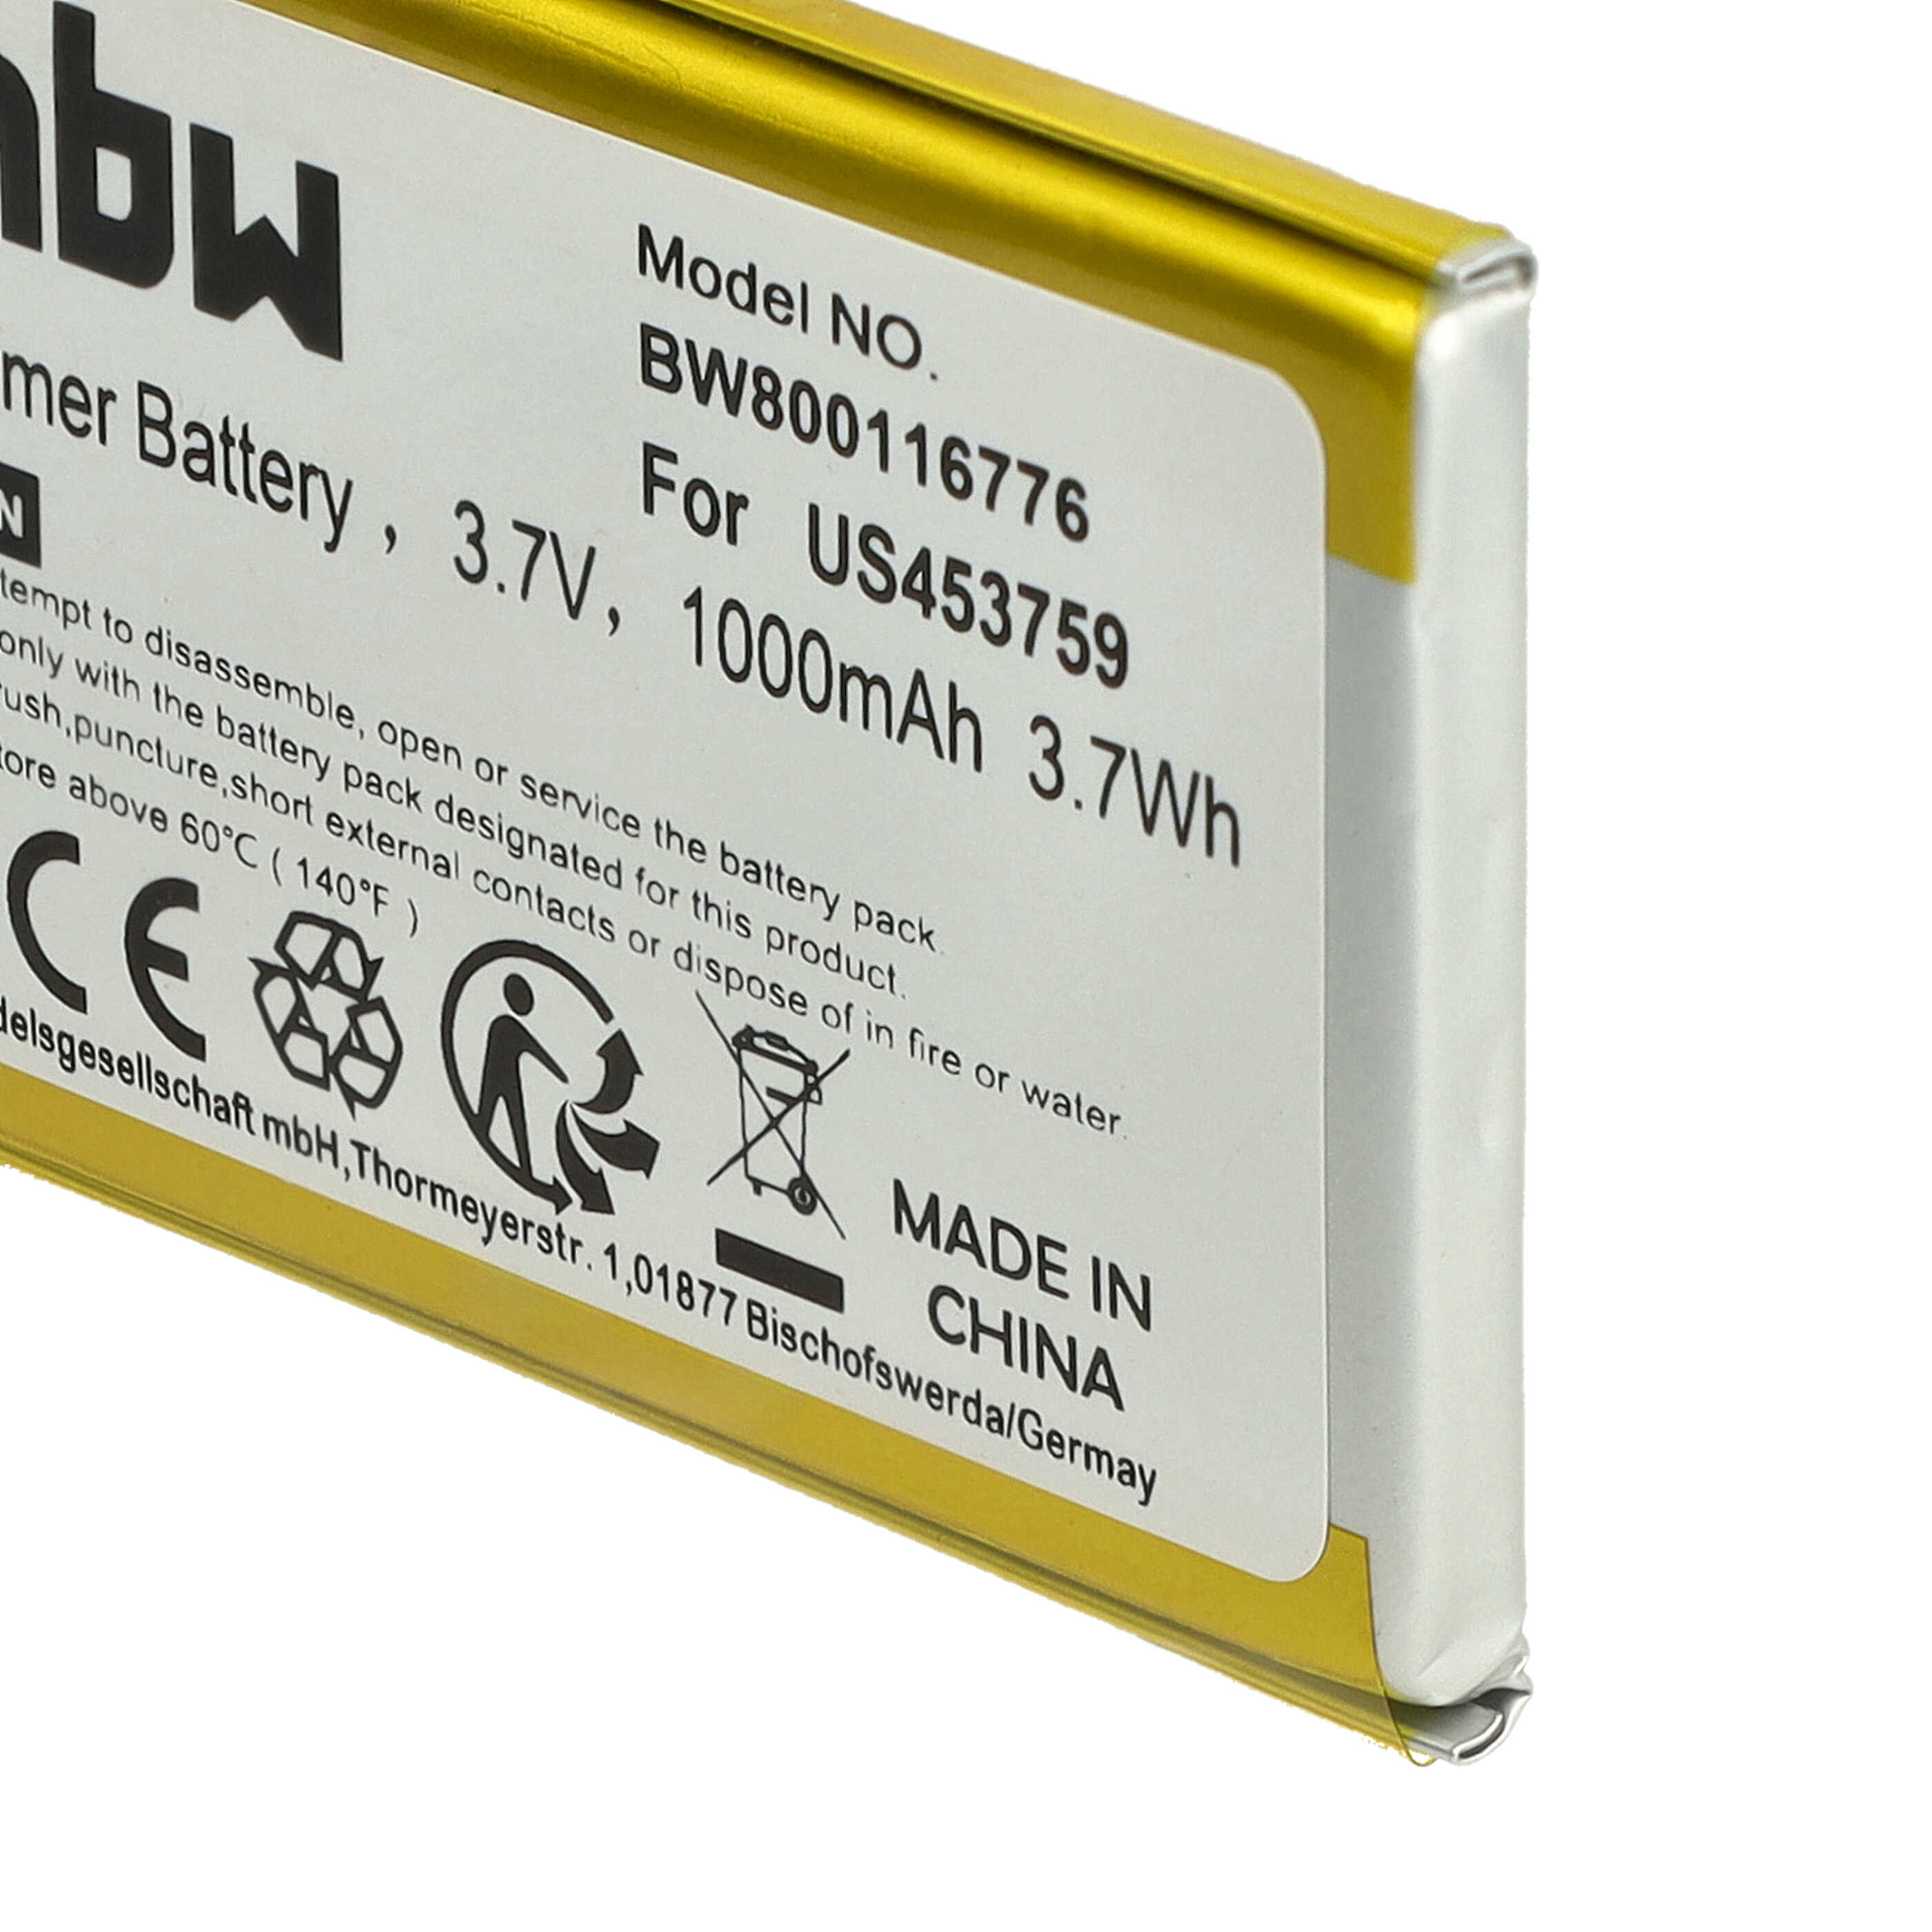 Batterie remplace Sony US453759 pour lecteur MP3 - 1000mAh 3,7V Li-polymère